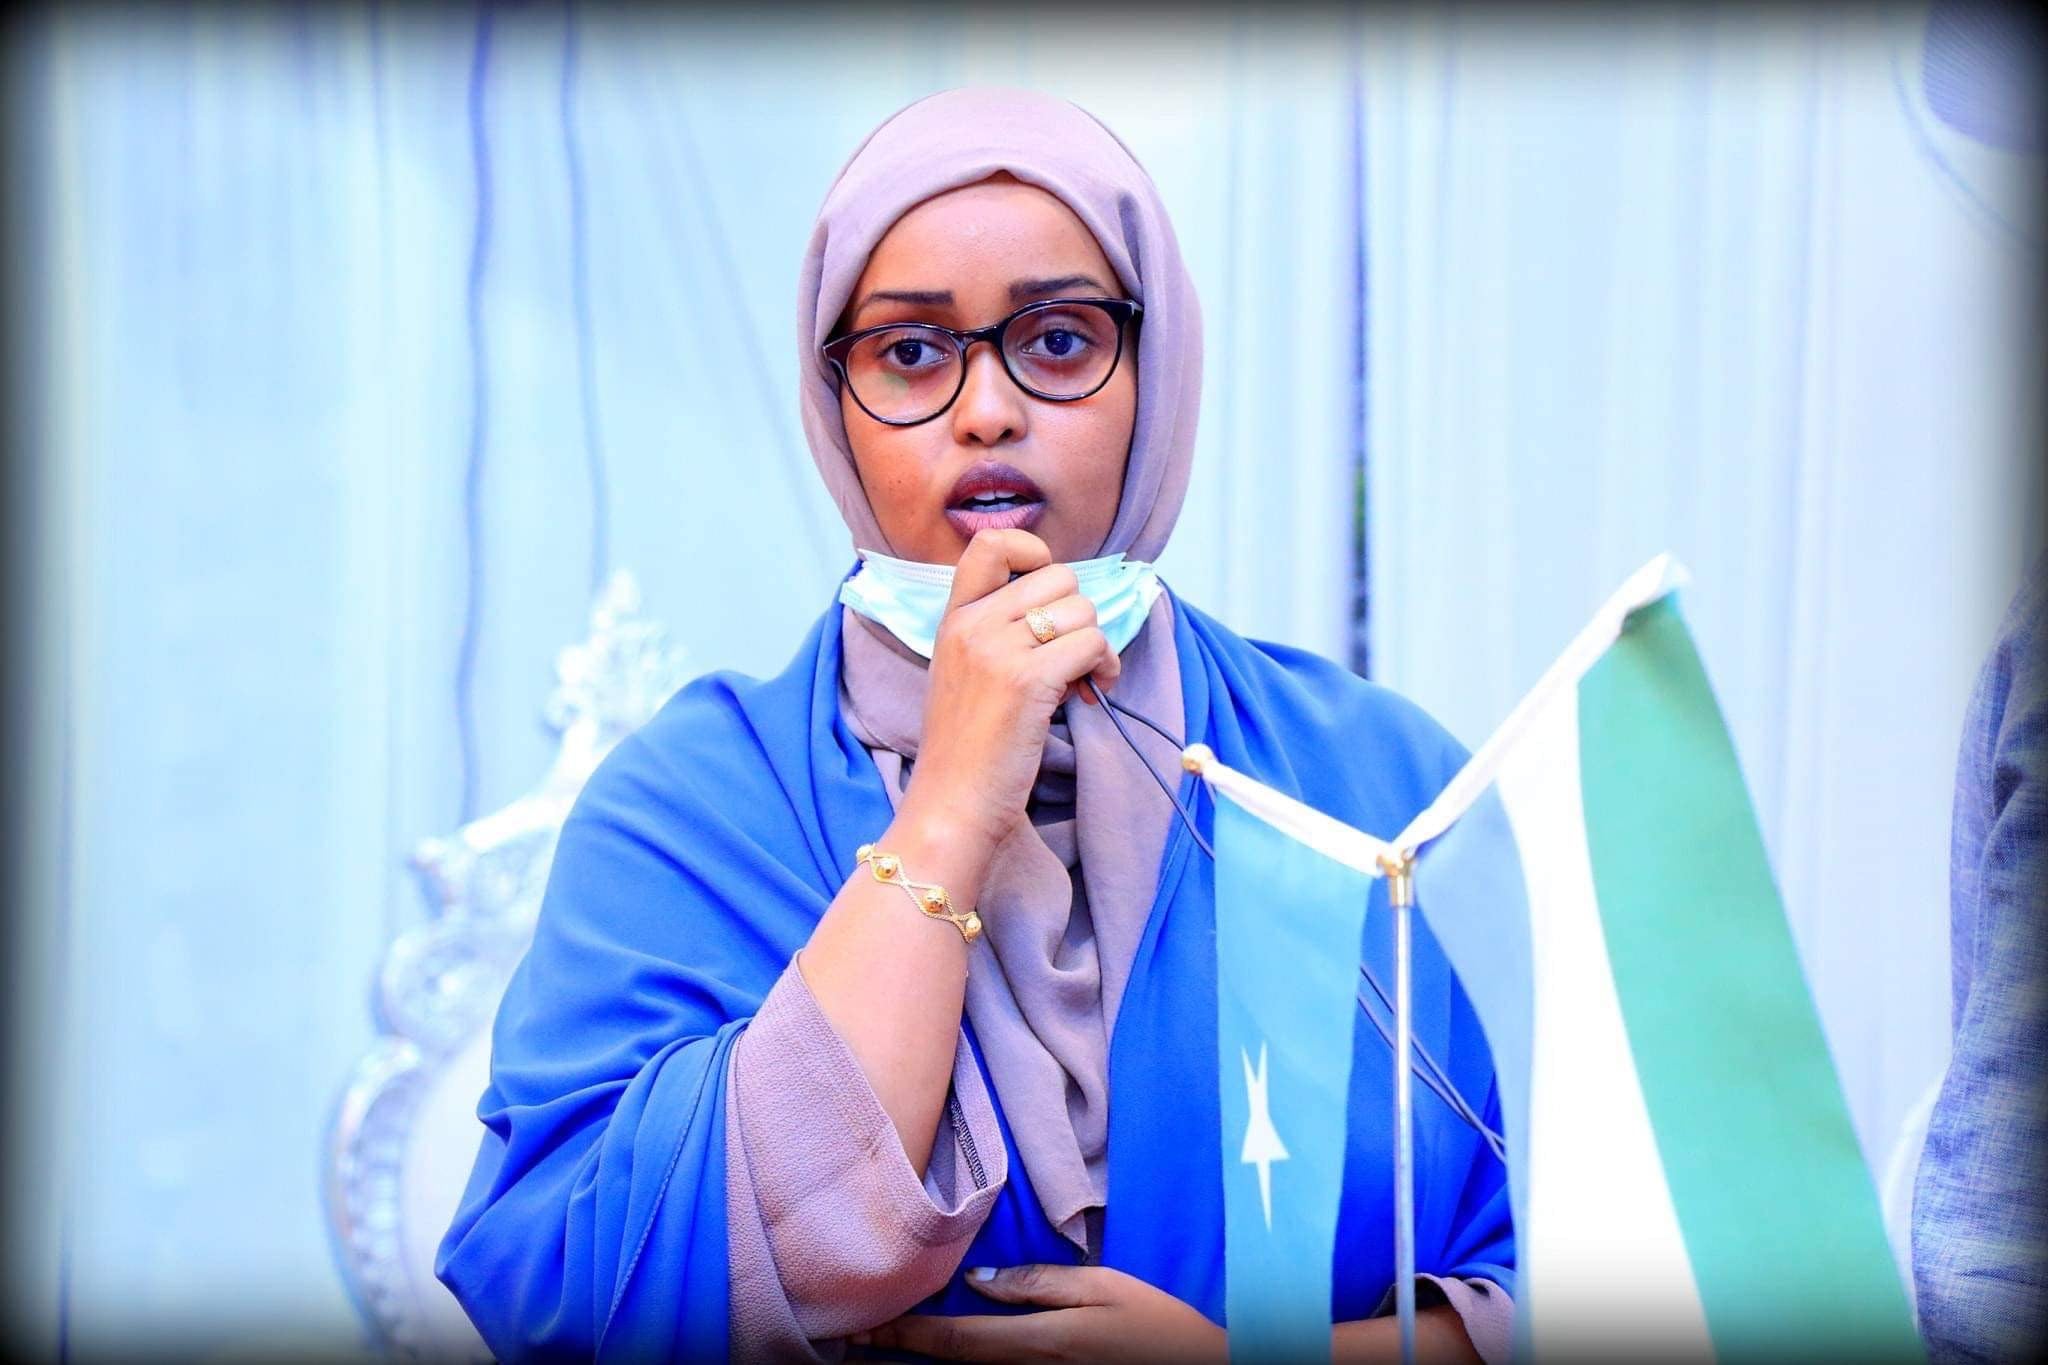 Una joven mujer somalí que lleva un velo morado, gafas negras redondas y una chaqueta azul da un discurso